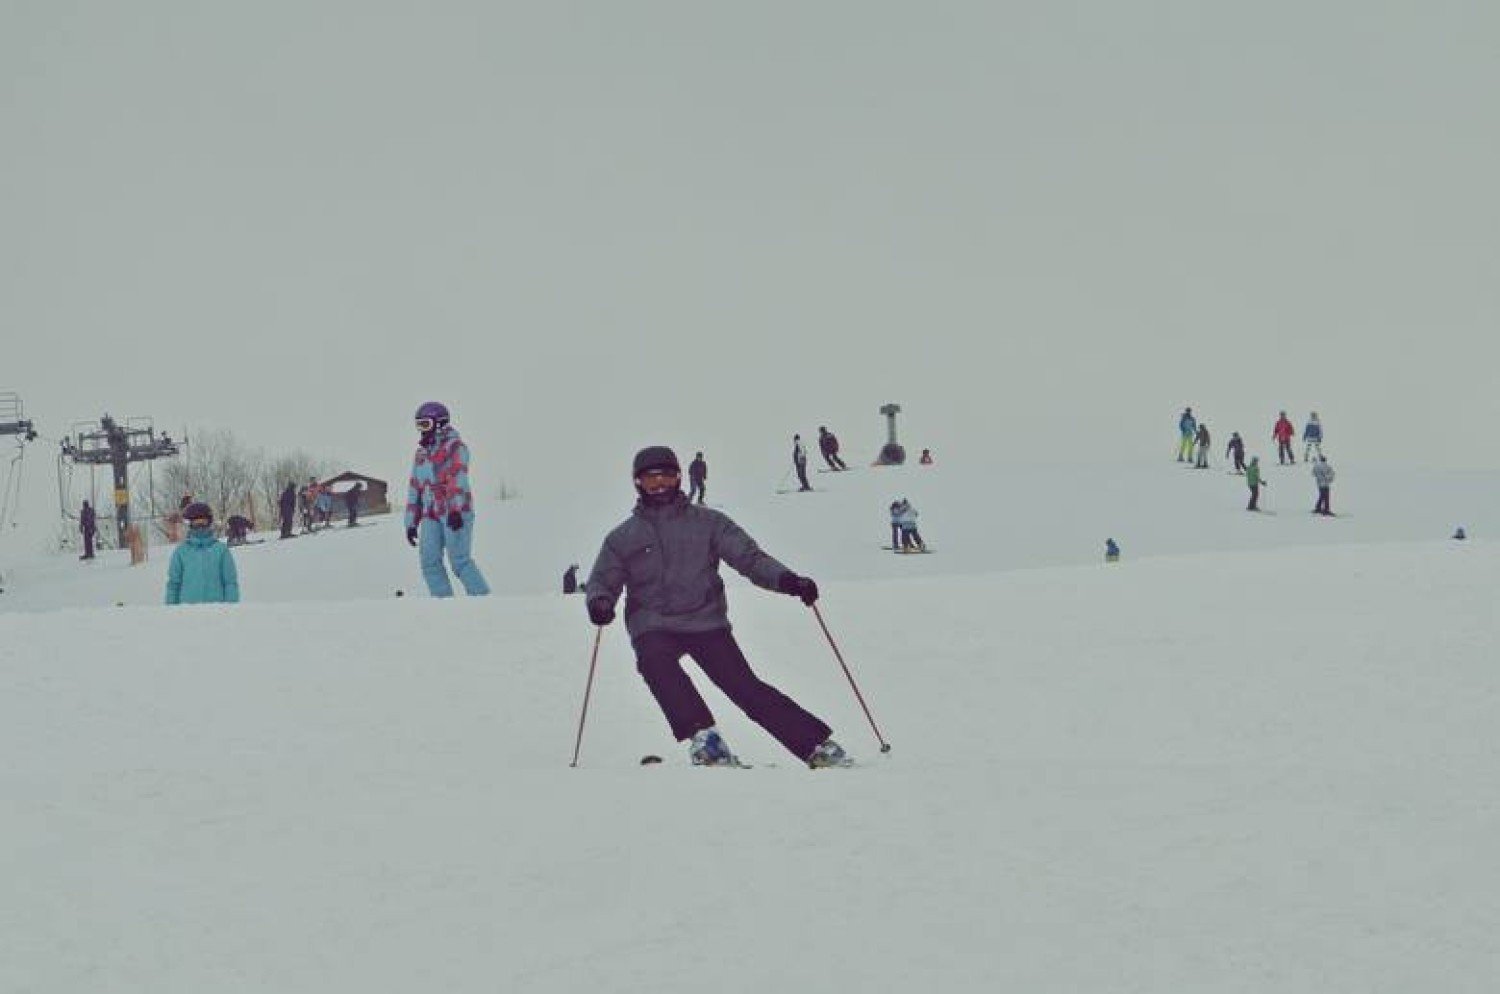 Góra Kamieńsk: stoki otwarte dla narciarzy i snowboardzistów. Góra Kamieńsk - zobacz warunki narciarskie, ceny i informacje 12.02.2021 | Dziennik Łódzki